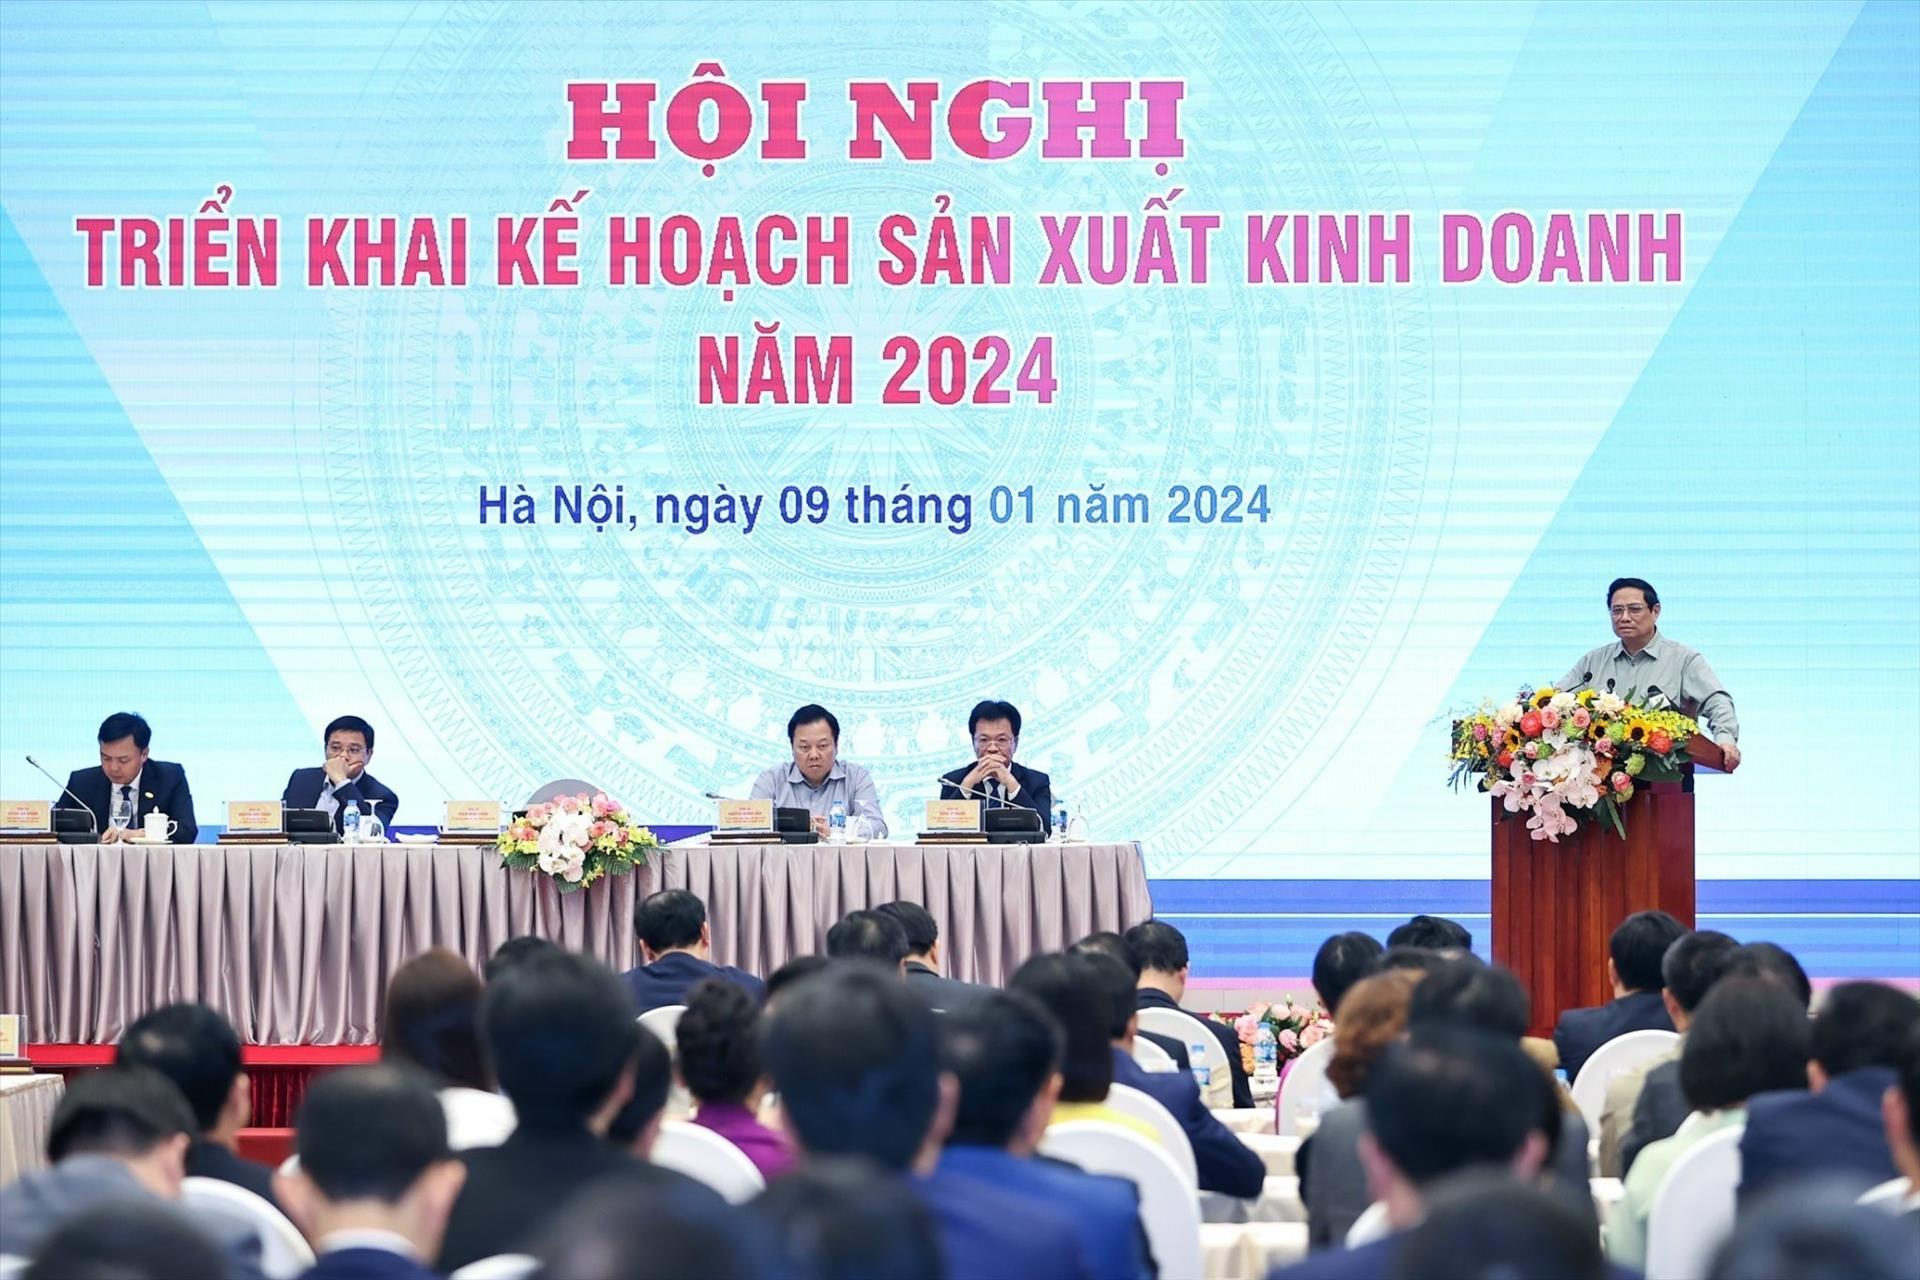 Phát biểu tại Hội nghị, Thủ tướng Phạm Minh Chính tỏ ra tích cực và đánh giá cao sự thay đổi tích cực trong Tổng Công ty Đường sắt Việt Nam